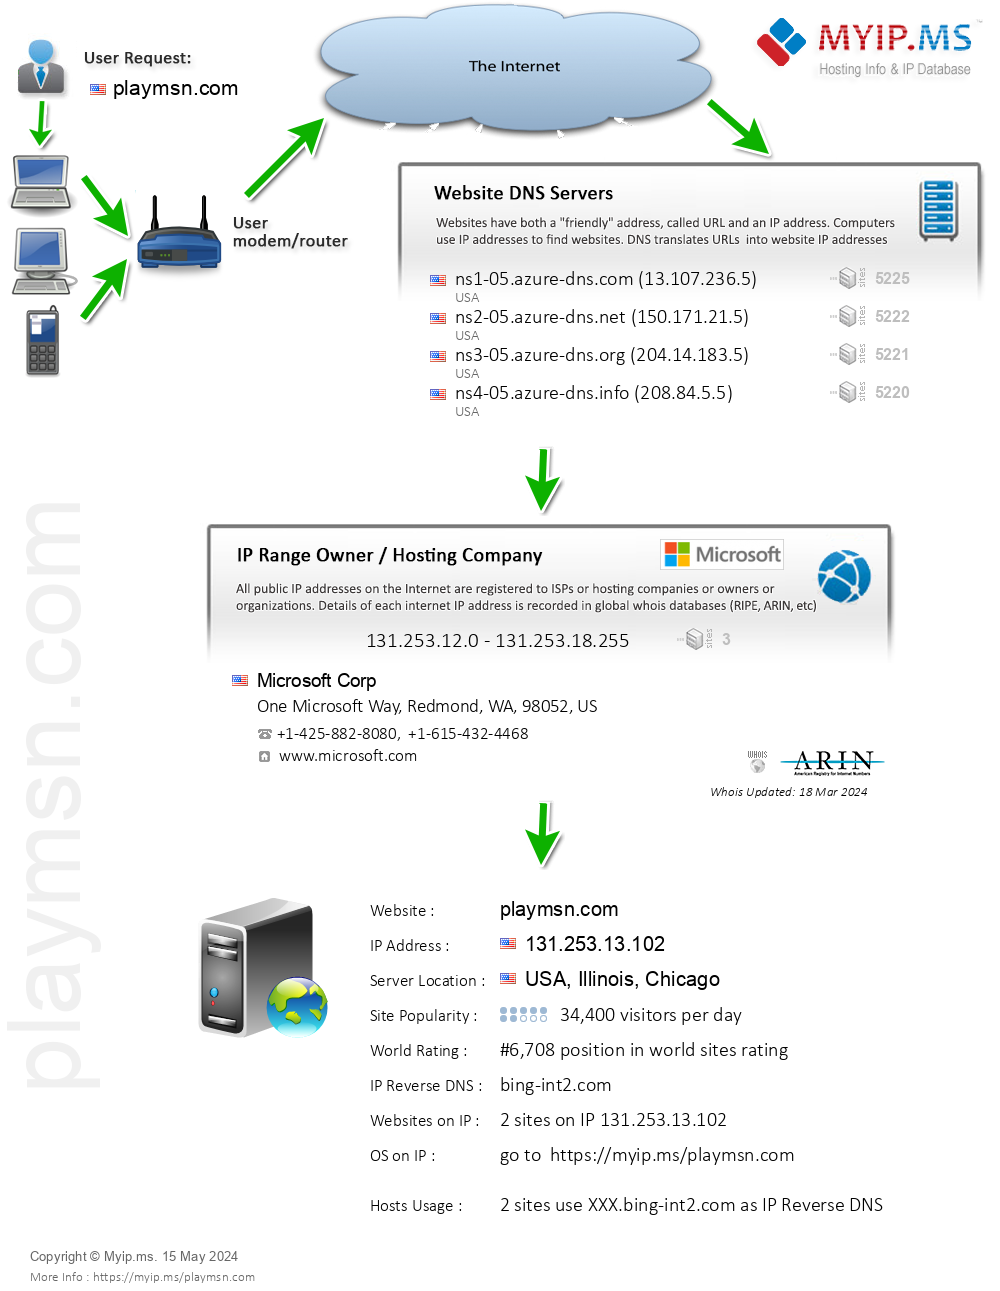 Playmsn.com - Website Hosting Visual IP Diagram